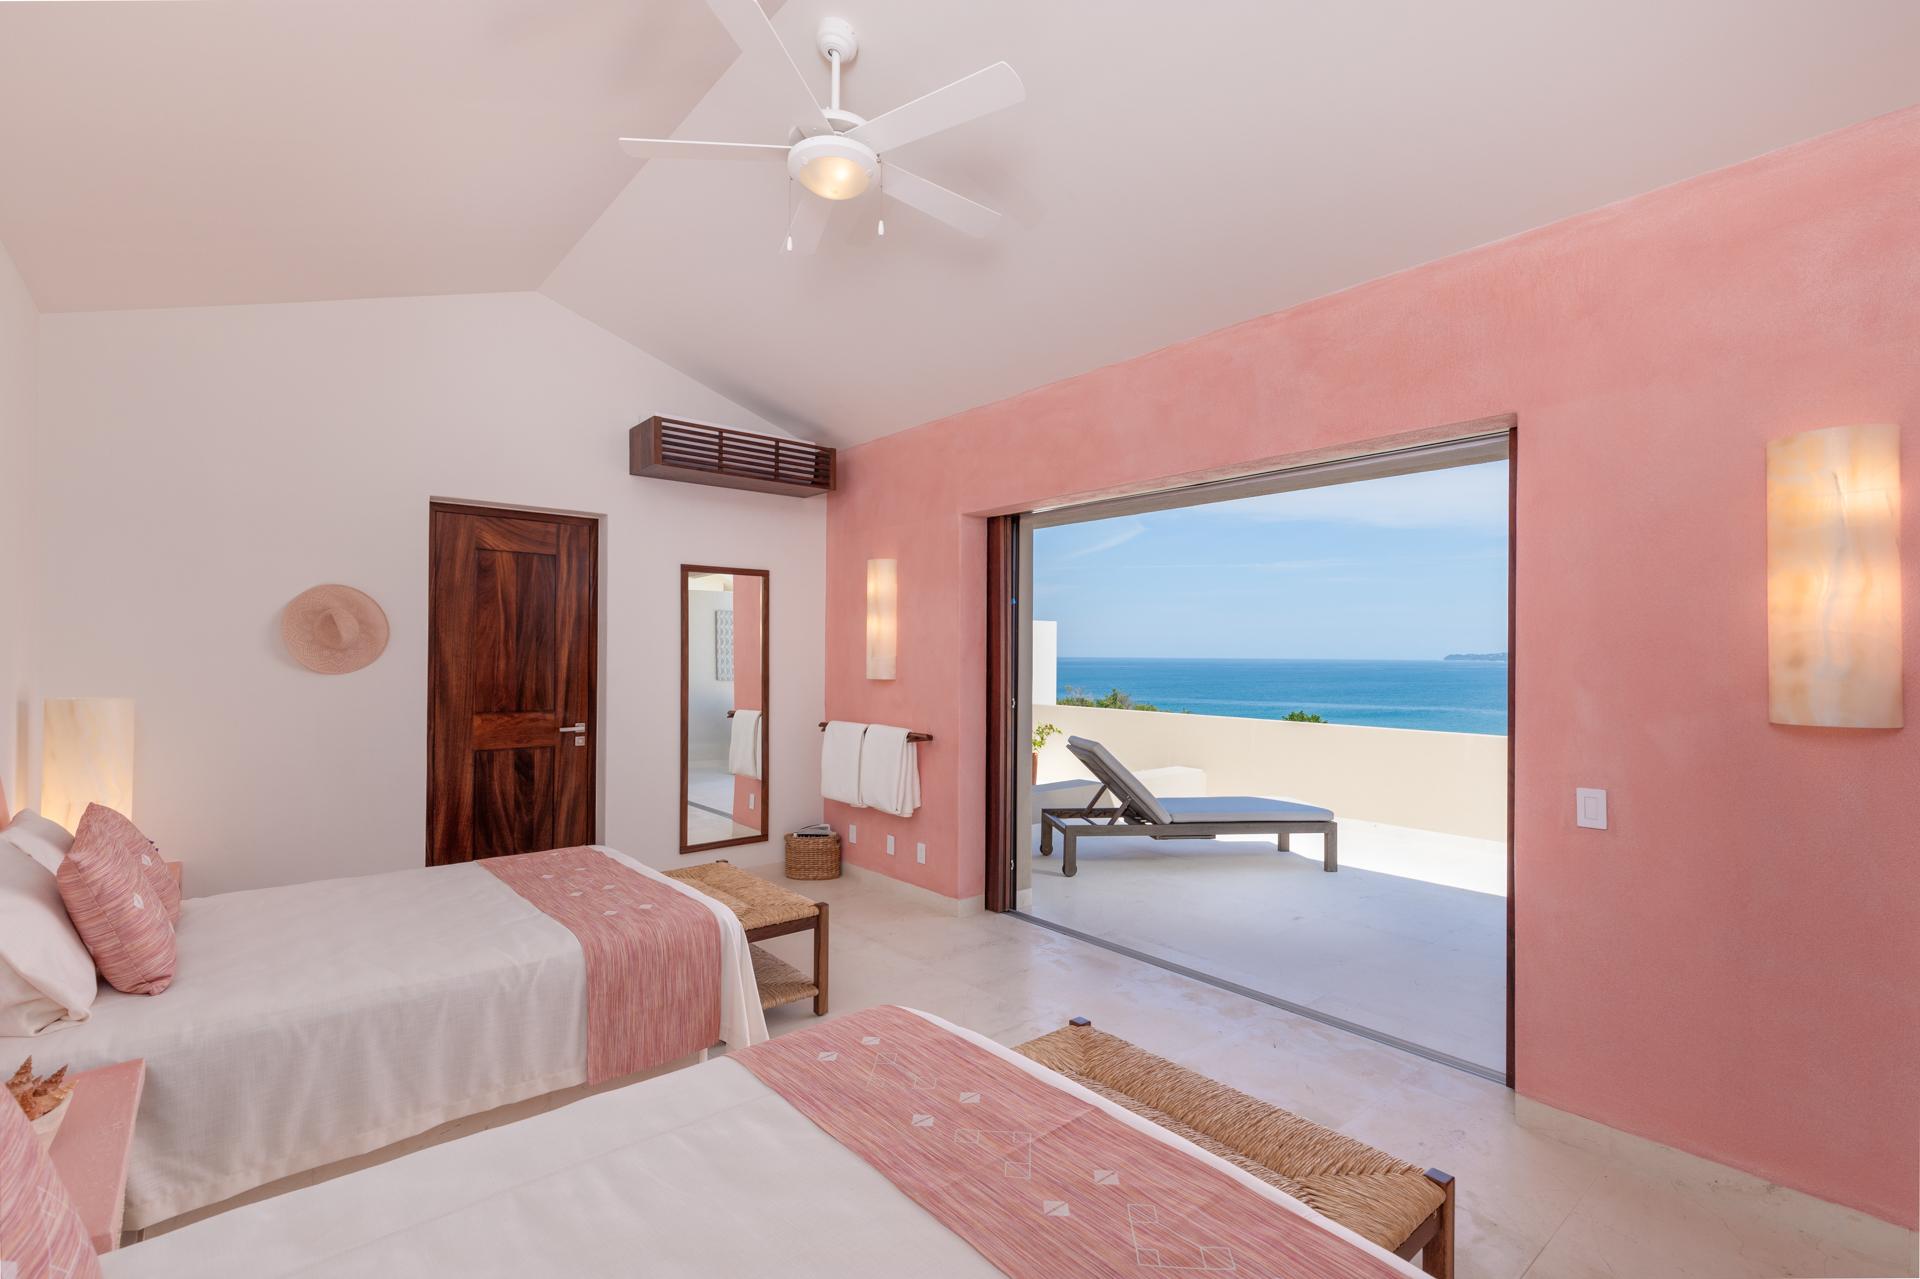 Two bedroom, ocean view room, luxury house rental